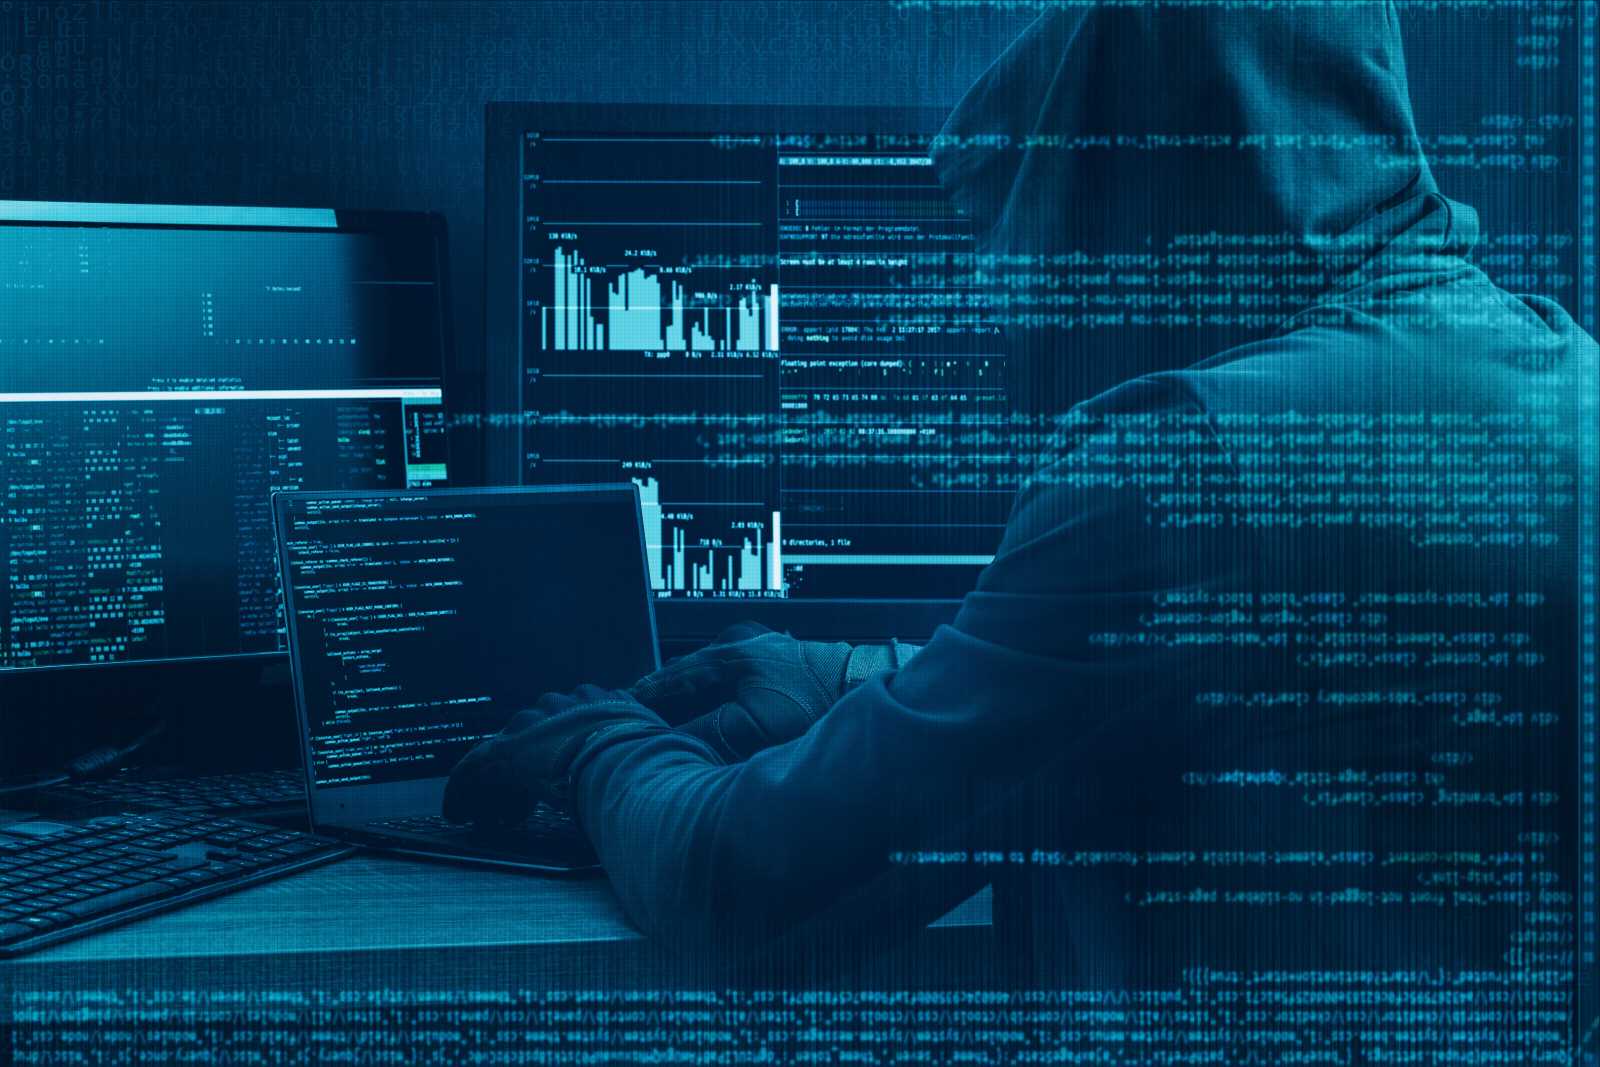 經由線索推測，奧義認為駭客攻擊來自中國。圖片來源：Shutterstock